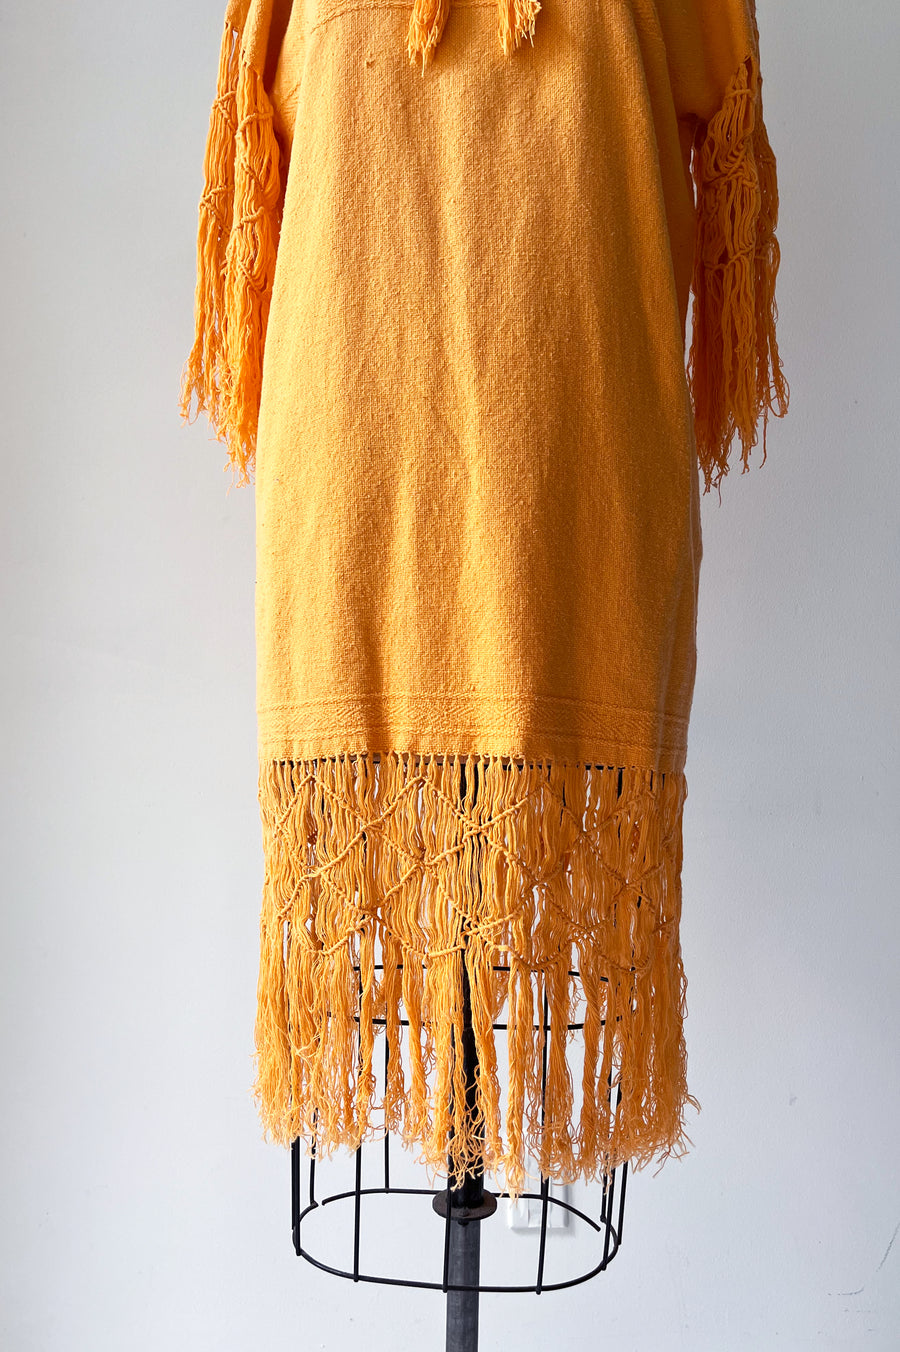 Vintage Yellow Dress with Macrame Fringe